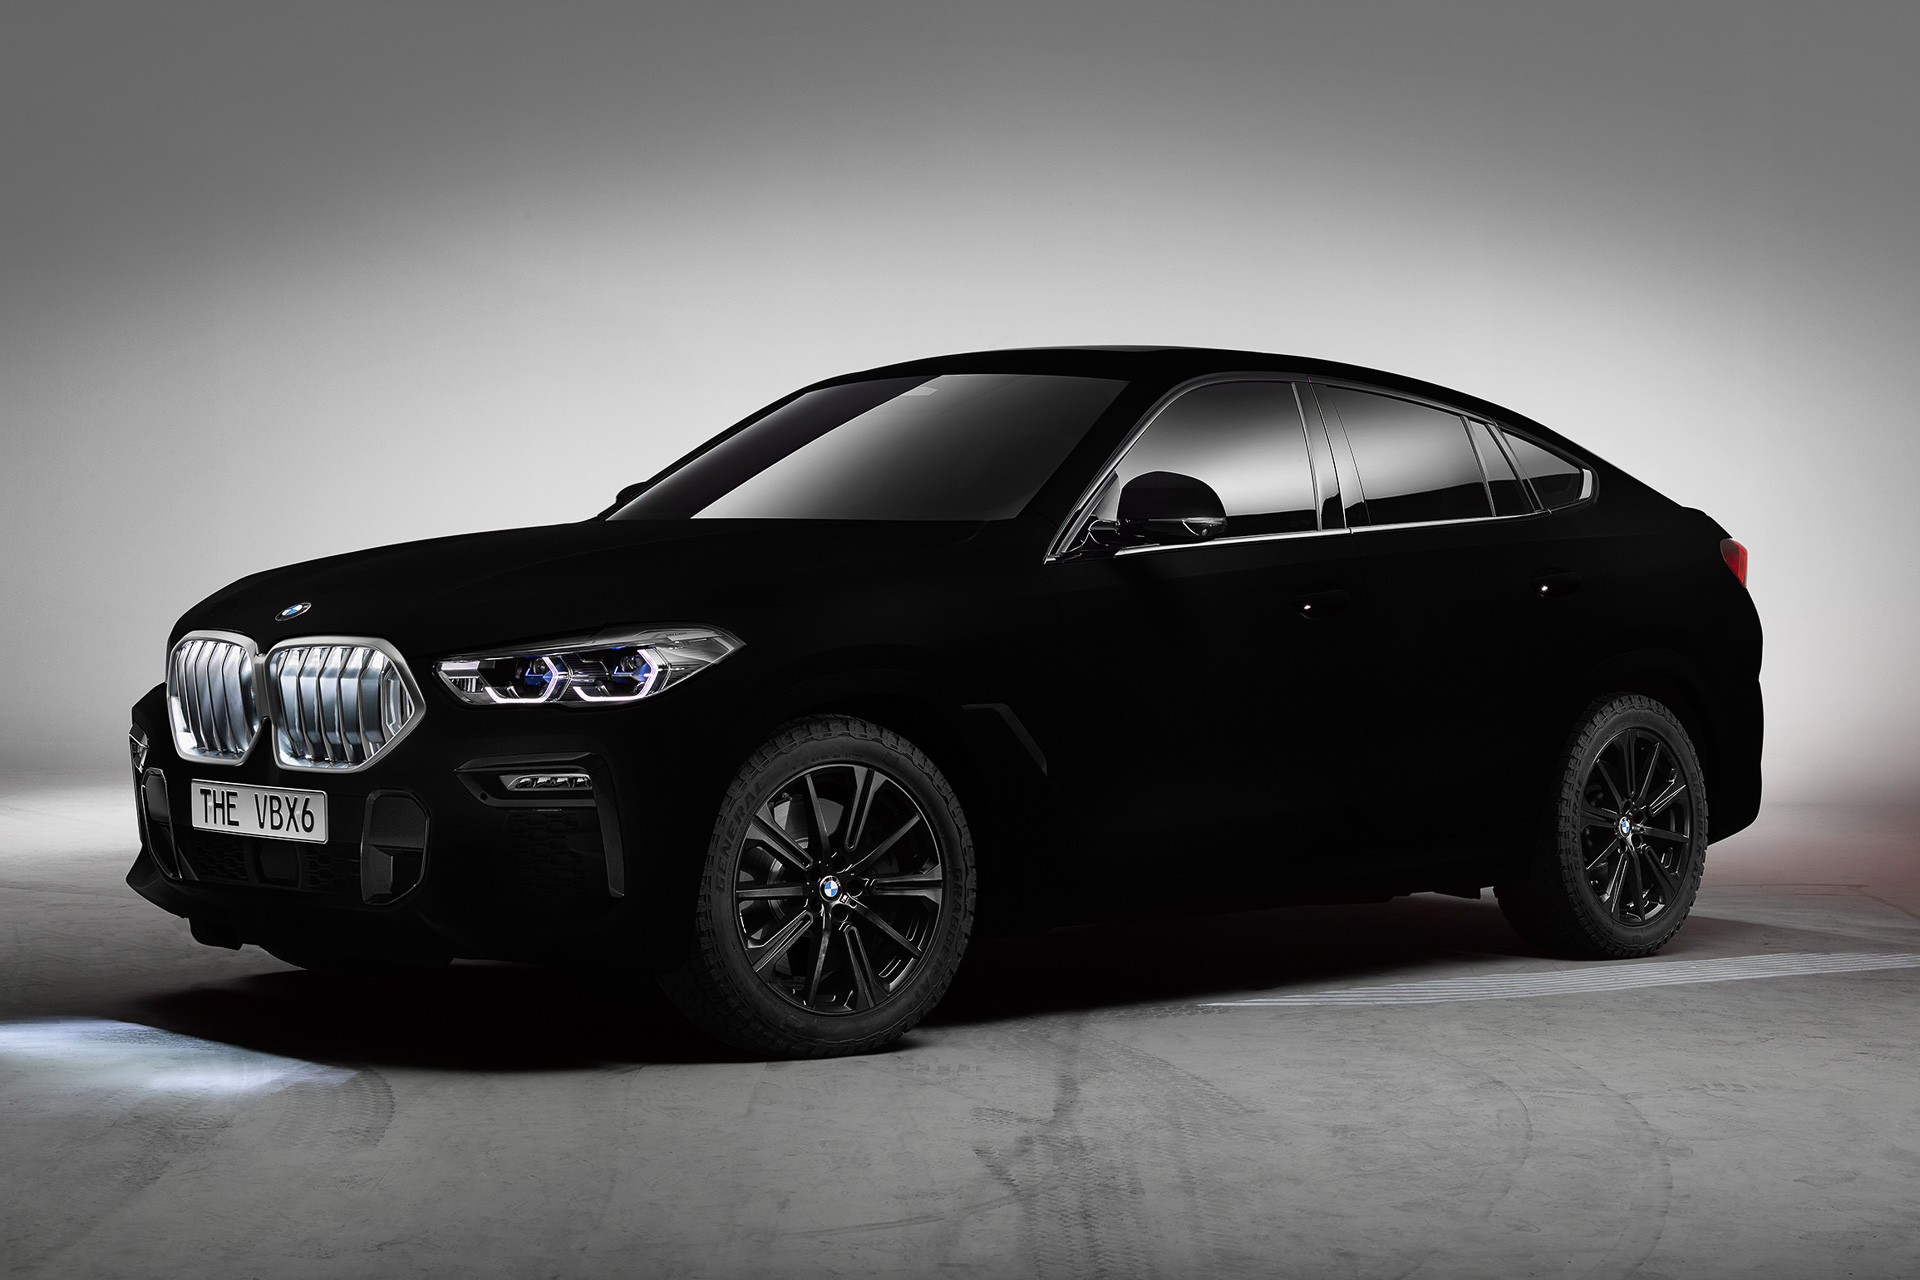 独bmw 世界で最も黒い黒 の新型 X6 をフランクフルトショー 19で世界初公開 Car Watch